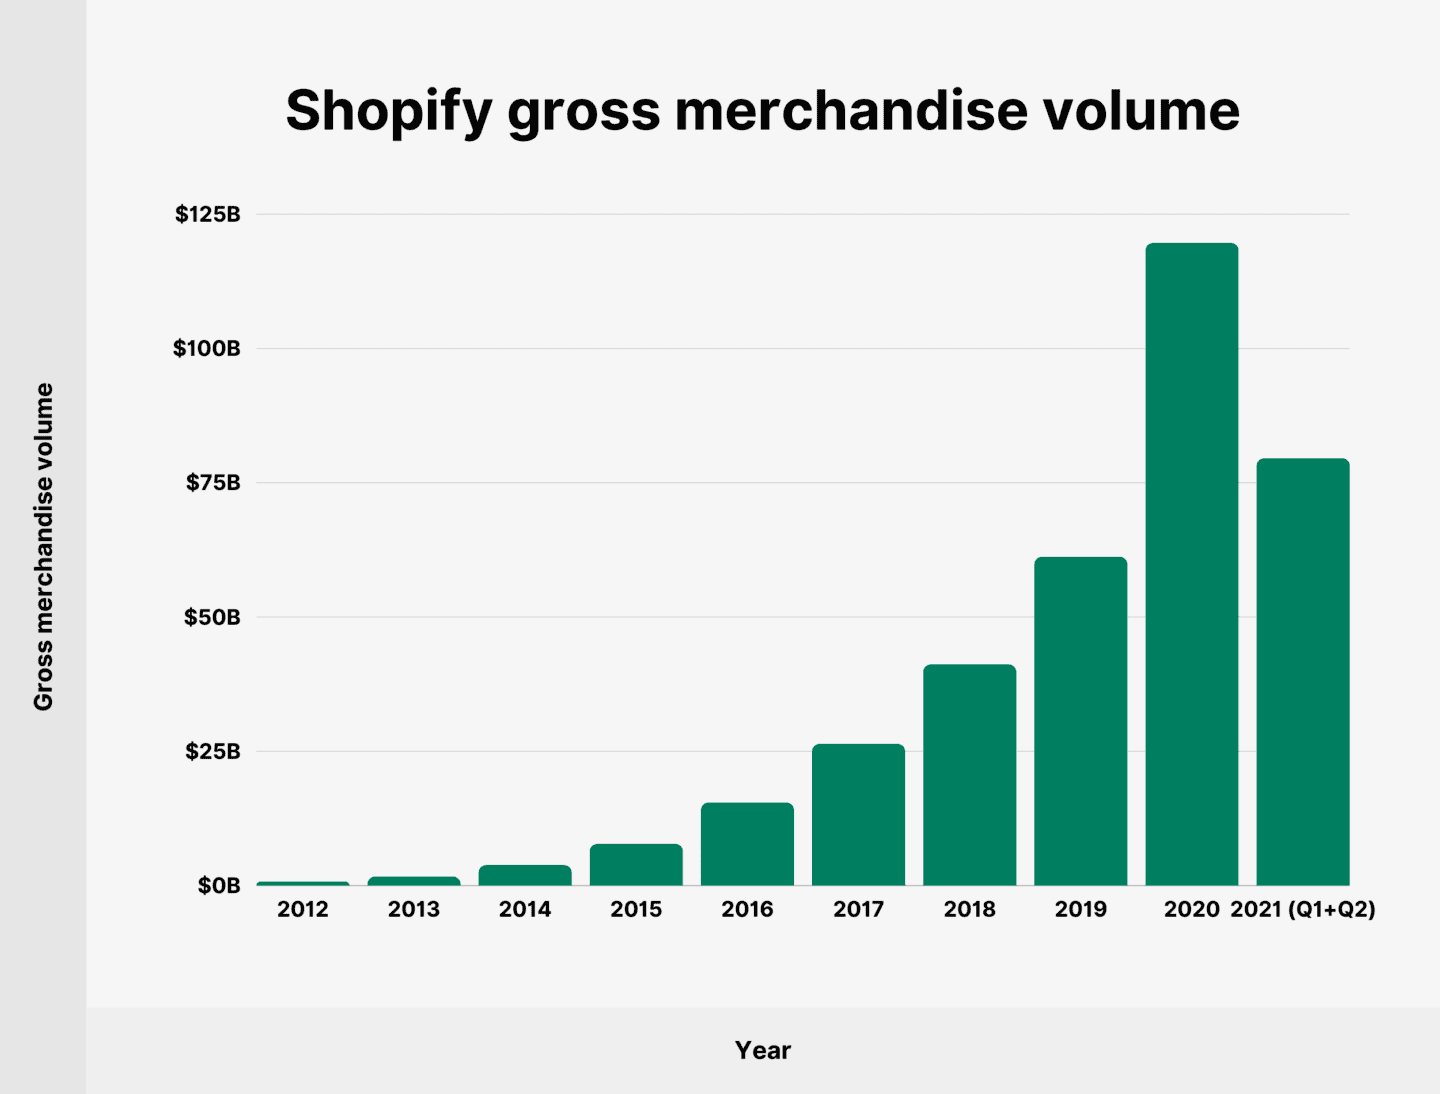 La valeur brute des marchandises Shopify en 2021 était de 79,5 milliards